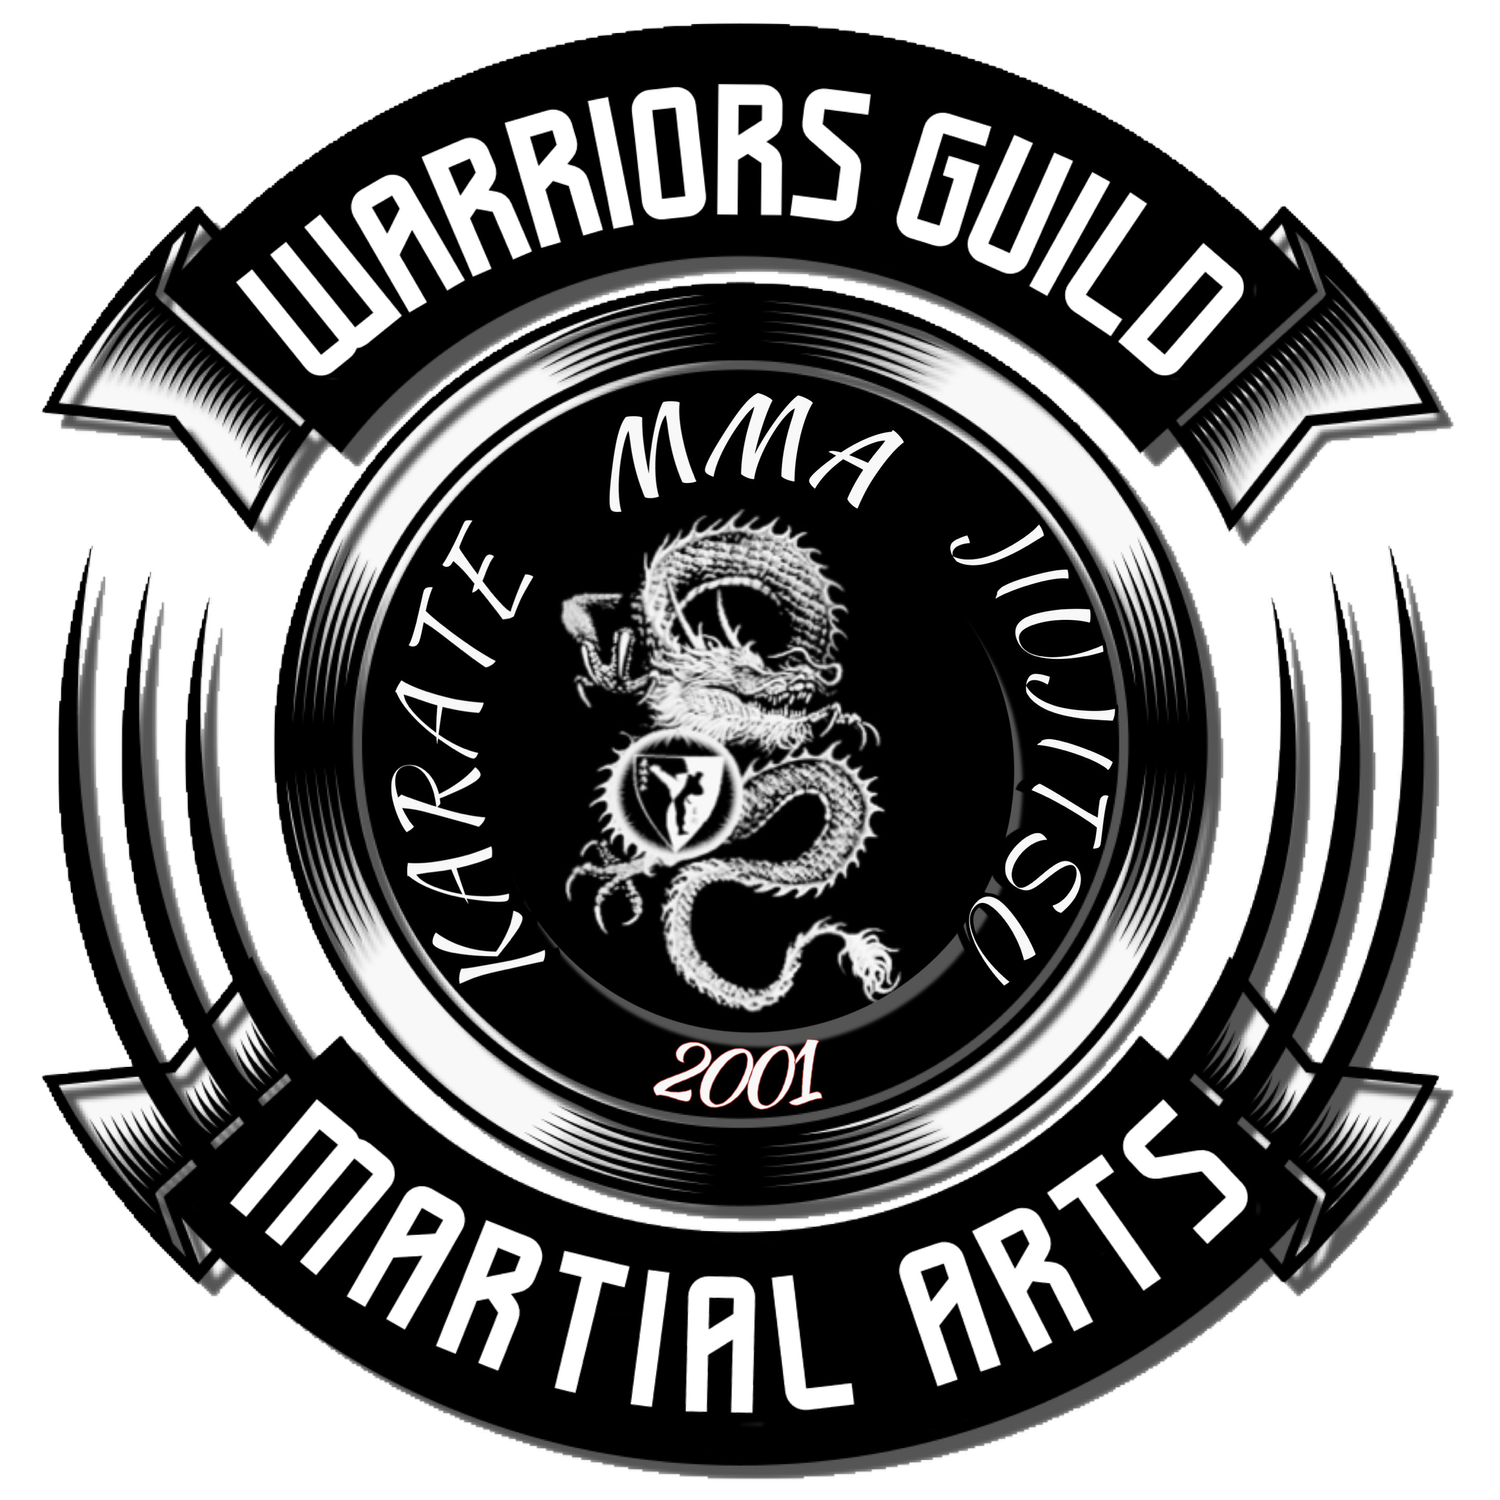 Warriors Guild Martial Arts